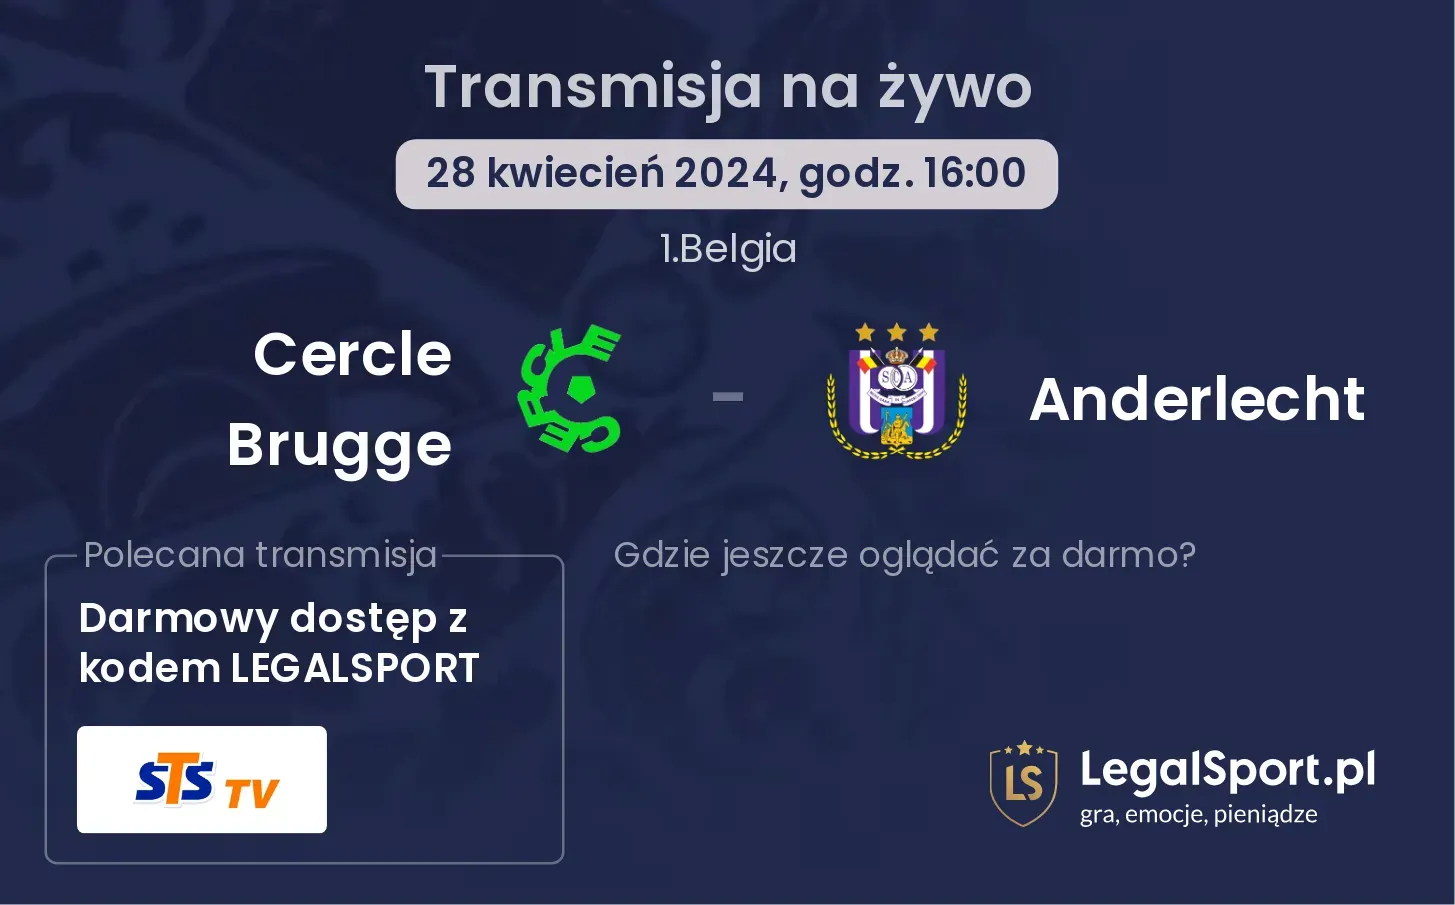 Cercle Brugge - Anderlecht transmisja na żywo